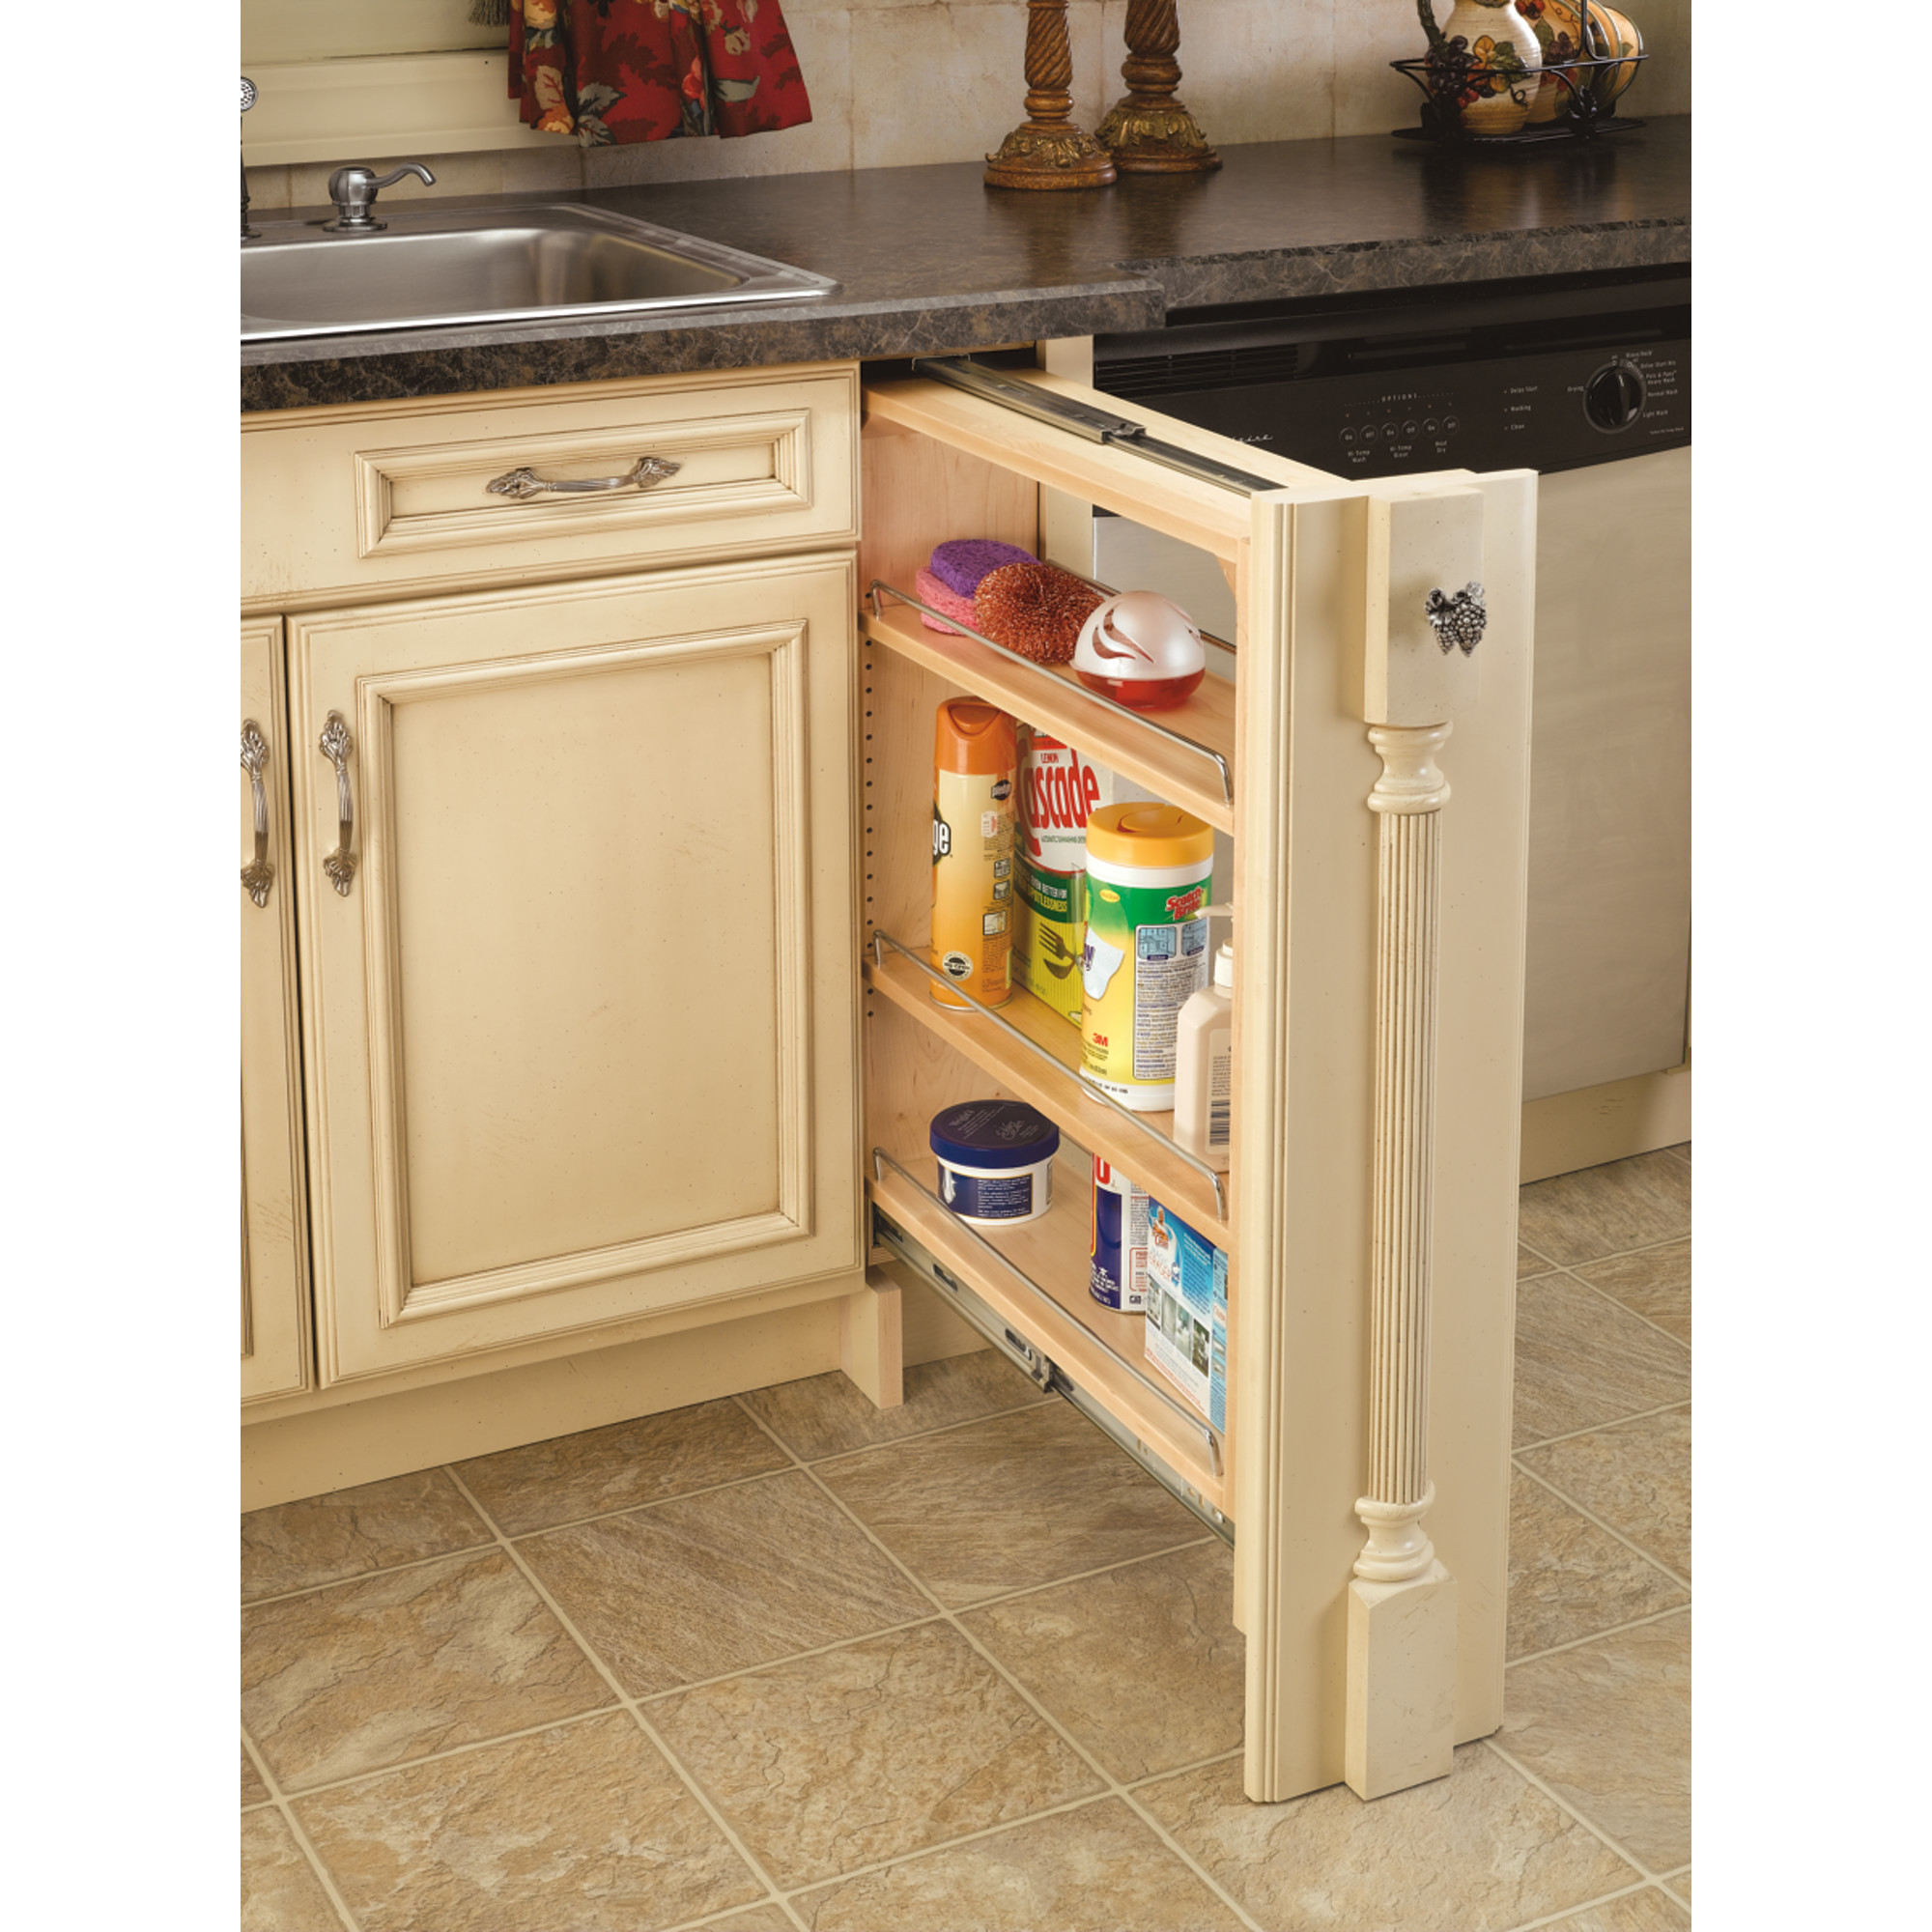  6 inch kitchen cabinet